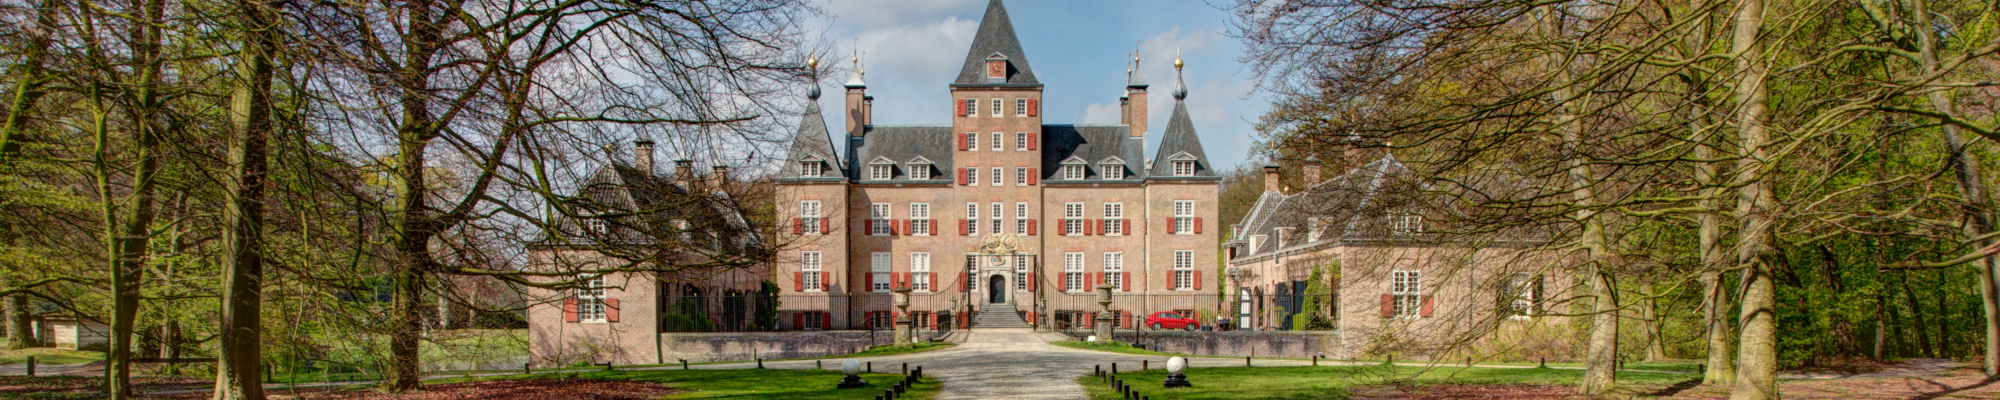 images/slides/muiderslot-amsterdam-castle.jpg